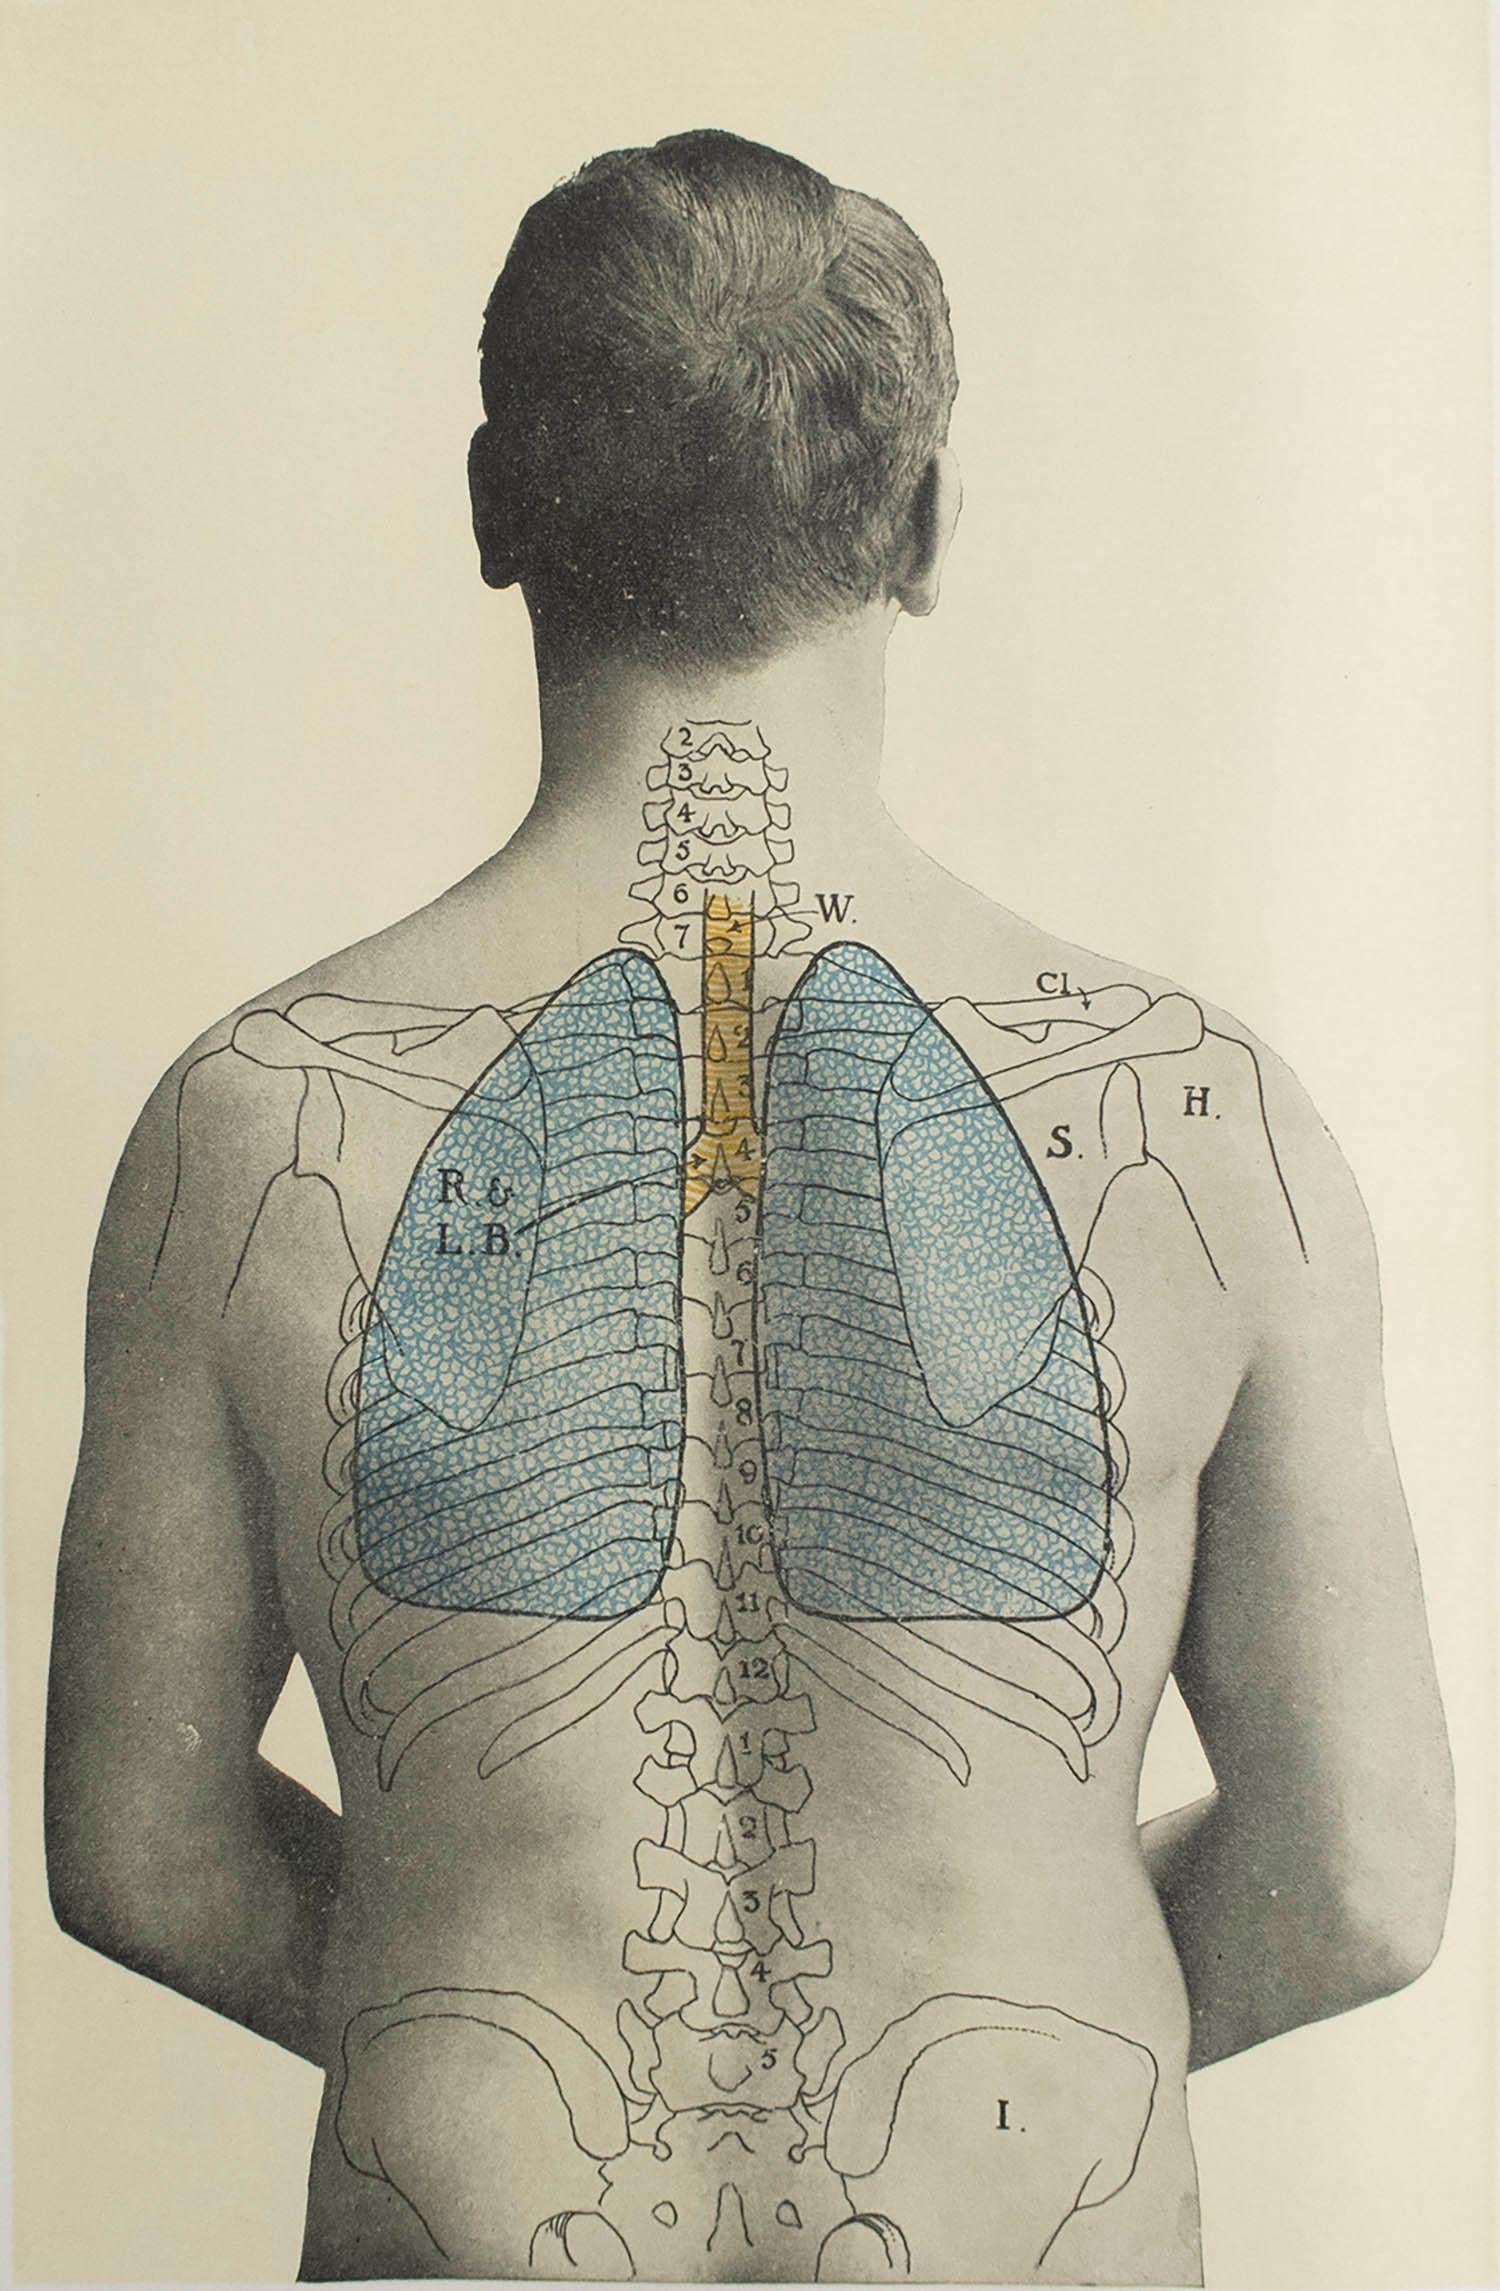 Großartiges Bild von medizinischem Interesse.

Ungerahmt.

Veröffentlicht, um 1900.







